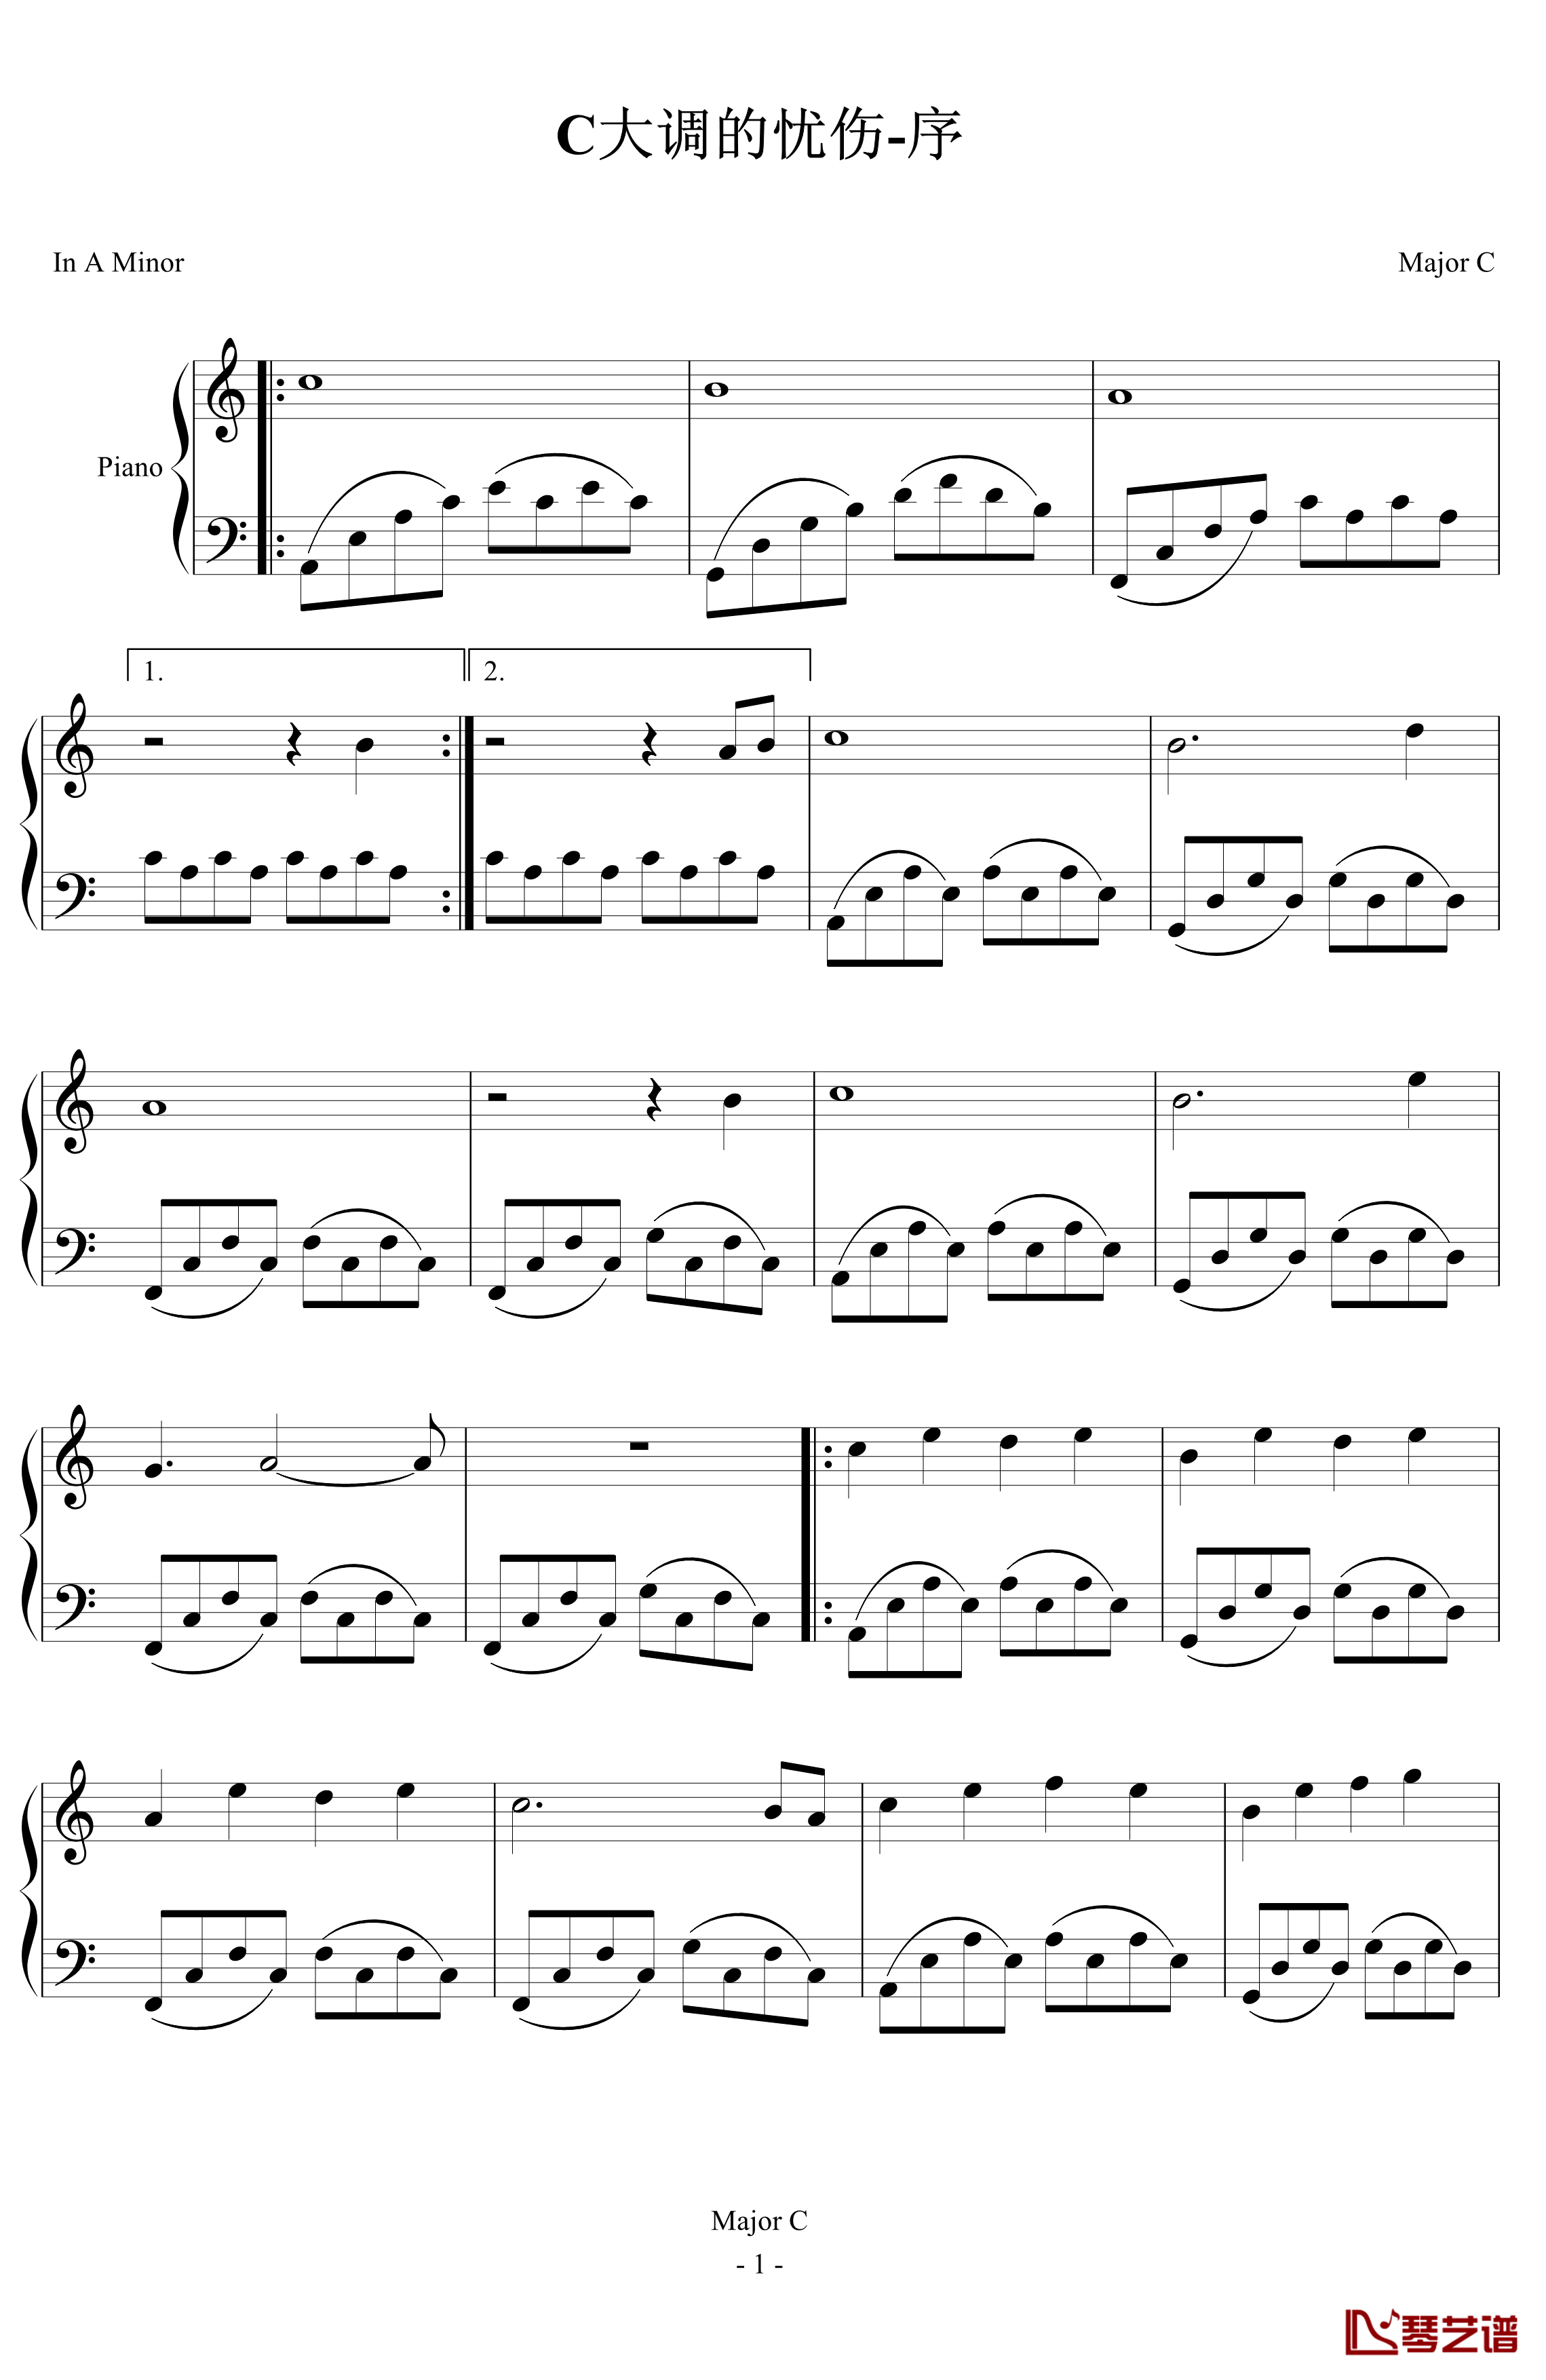 C大调的忧伤1钢琴谱-序-Major_C1